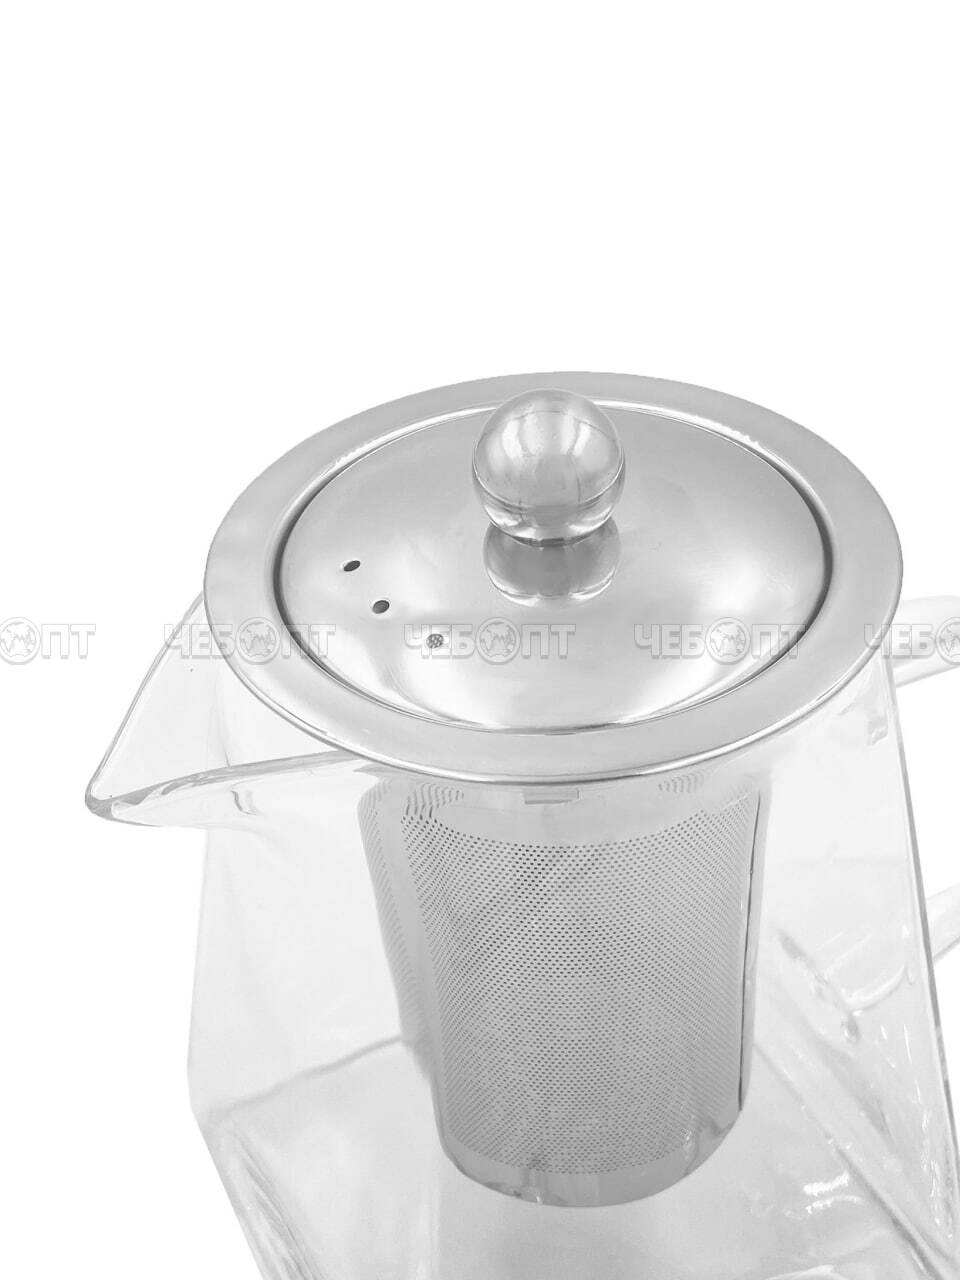 Чайник заварочный 950 мл КВАДРАТНЫЙ с металлическим ситечком, металлической крышкой, жаропрочное стекло арт. 260145 $ [60] GOODSEE. ЧЕБОПТ.